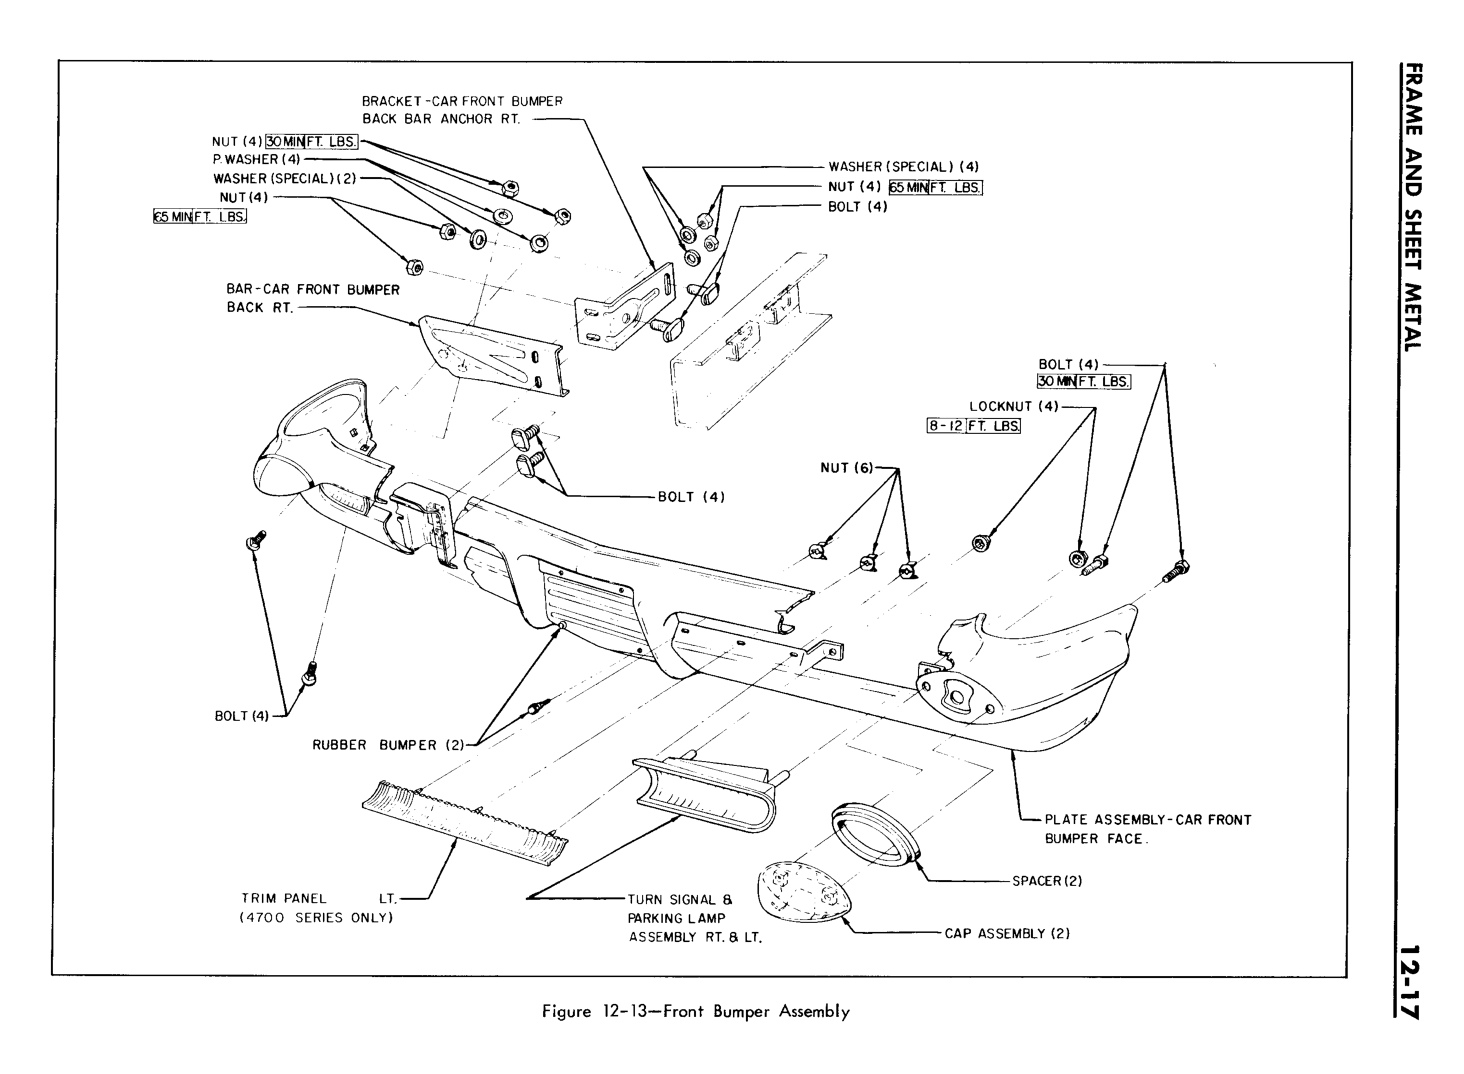 n_12 1961 Buick Shop Manual - Frame & Sheet Metal-017-017.jpg